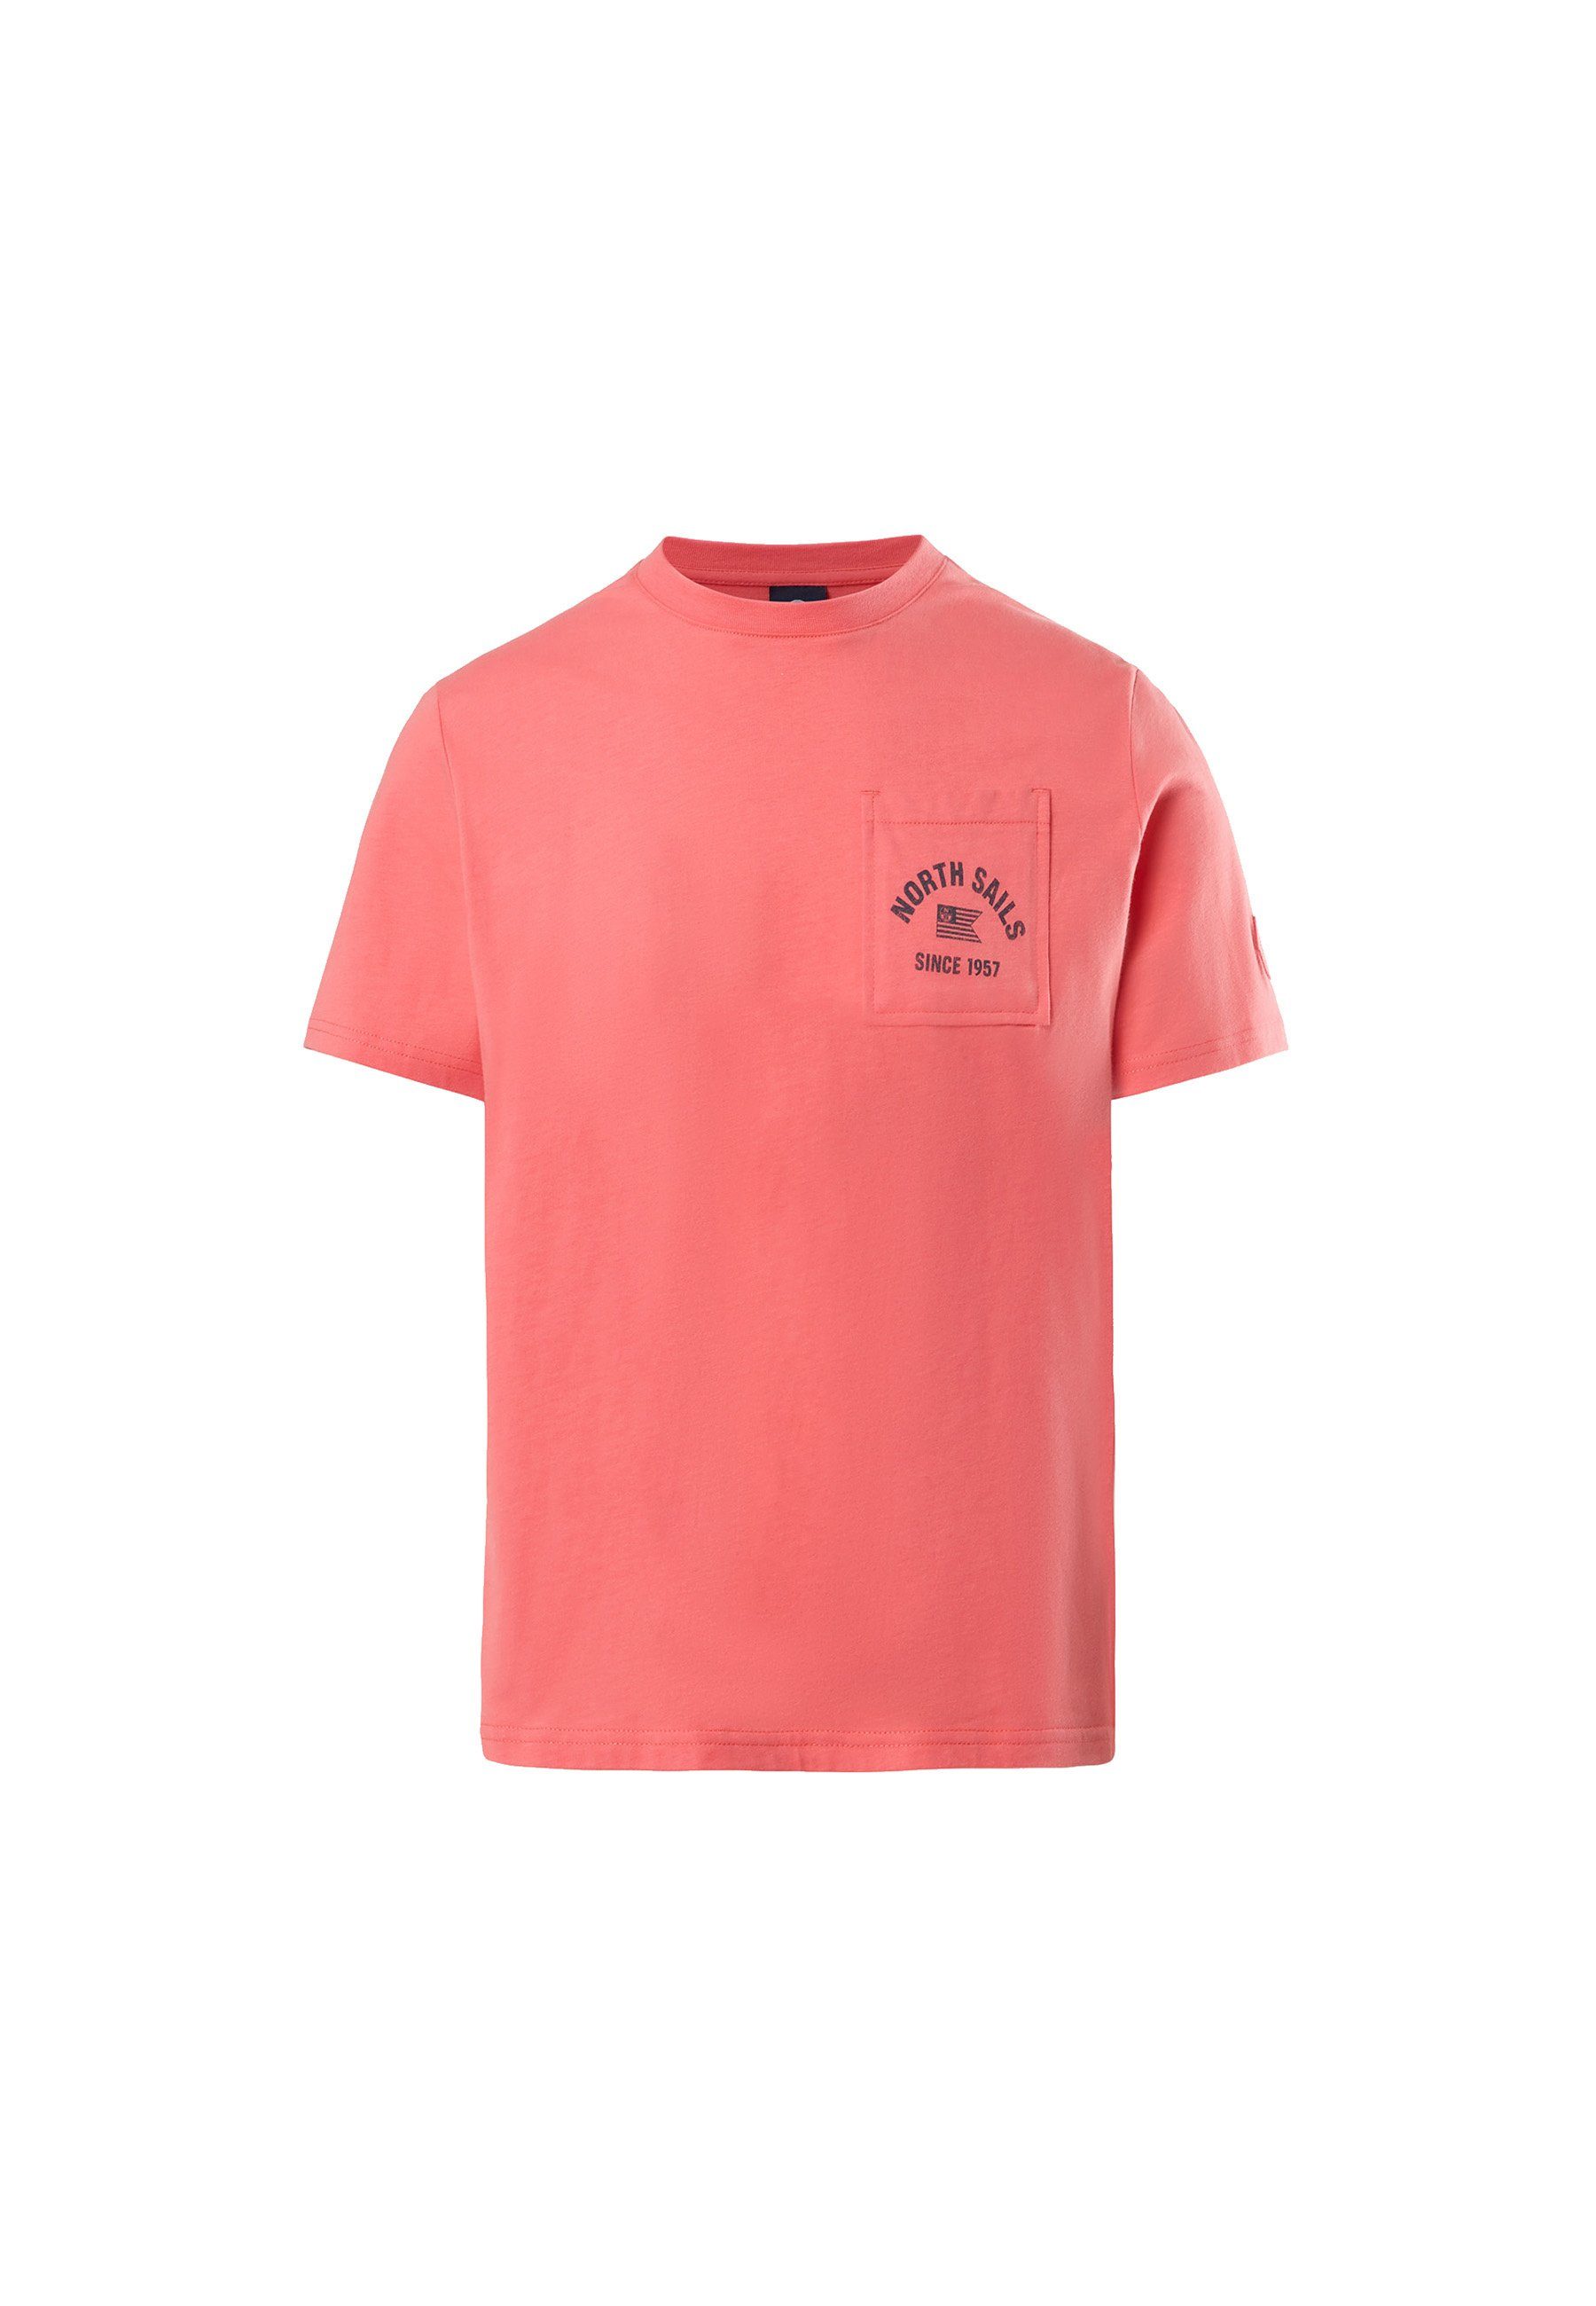 orange T-Shirt T-Shirt mit North Sails Sonstiges Brusttasche